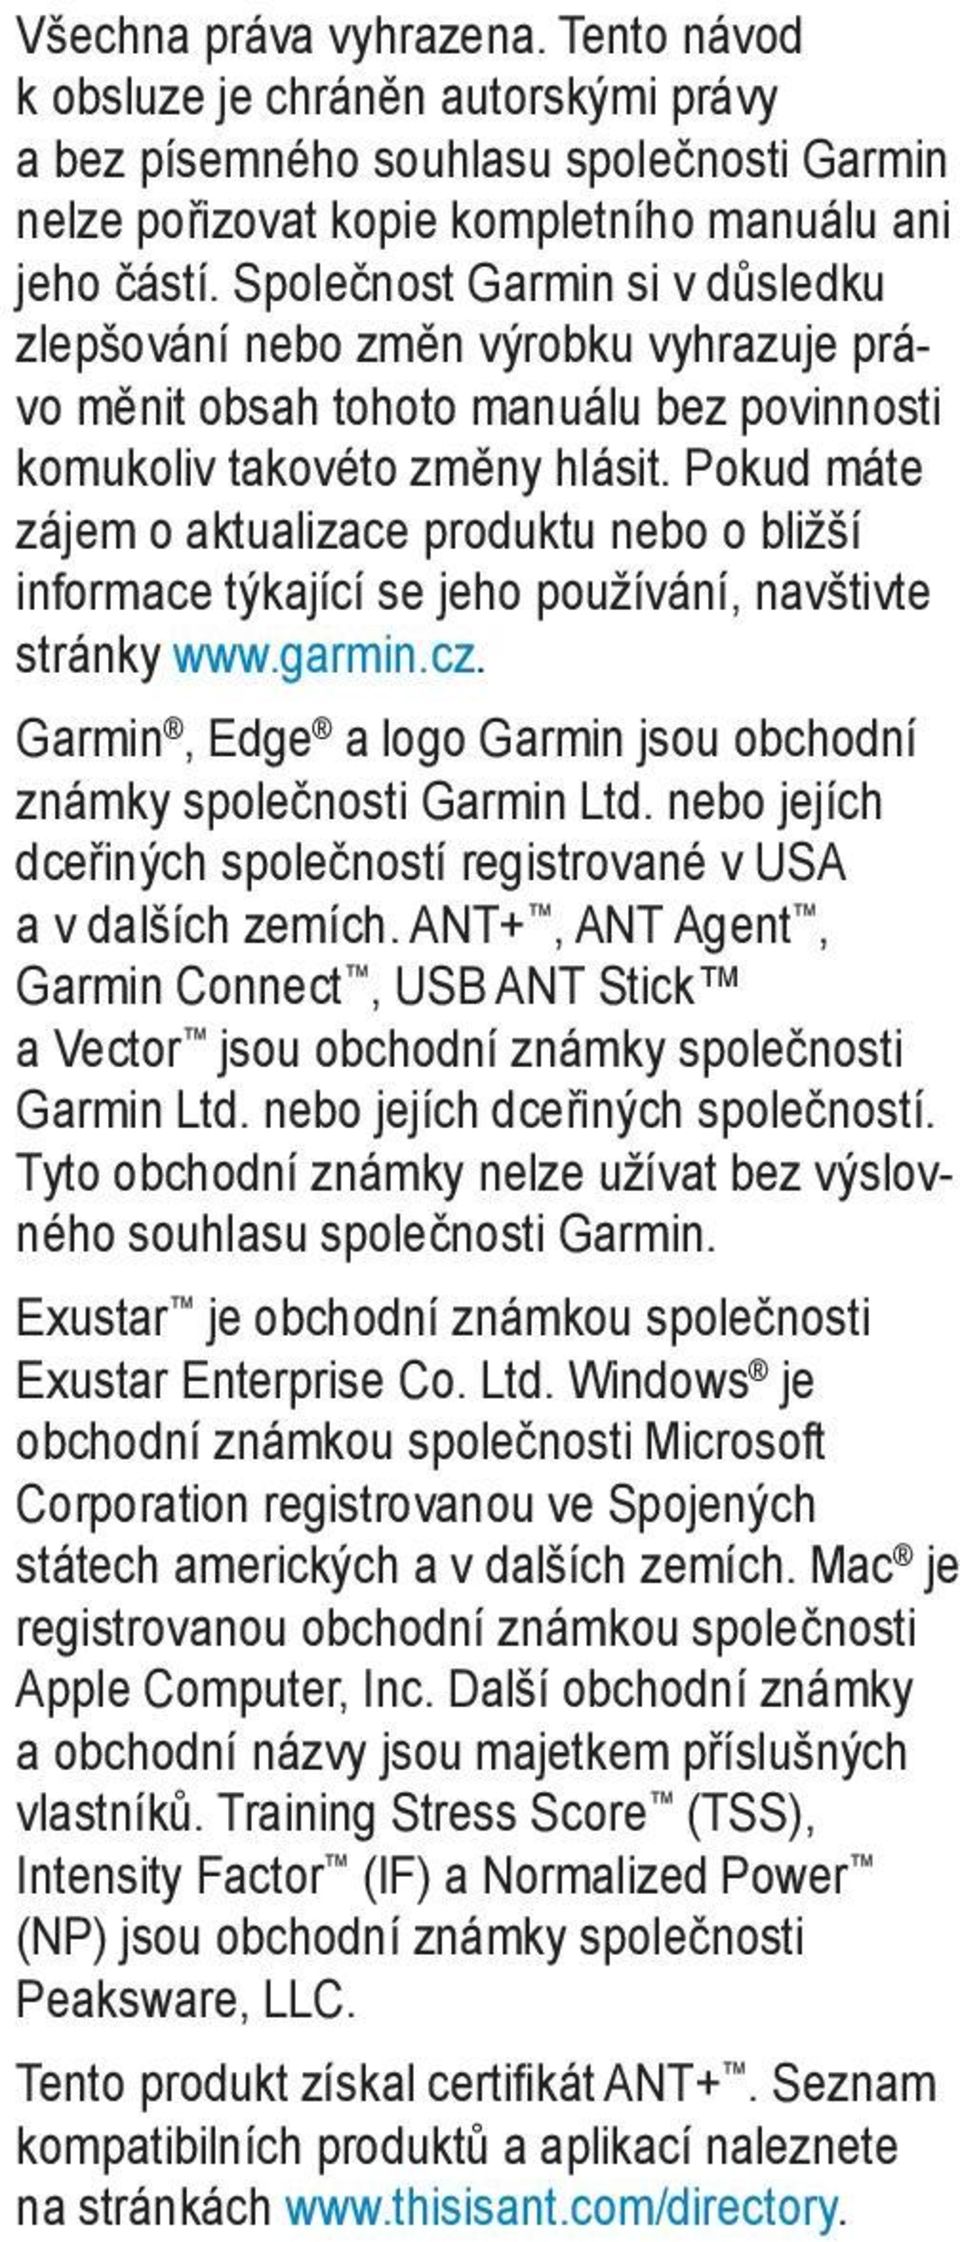 Pokud máte zájem o aktualizace produktu nebo o bližší informace týkající se jeho používání, navštivte stránky www.garmin.cz. Garmin, Edge a logo Garmin jsou obchodní známky společnosti Garmin Ltd.